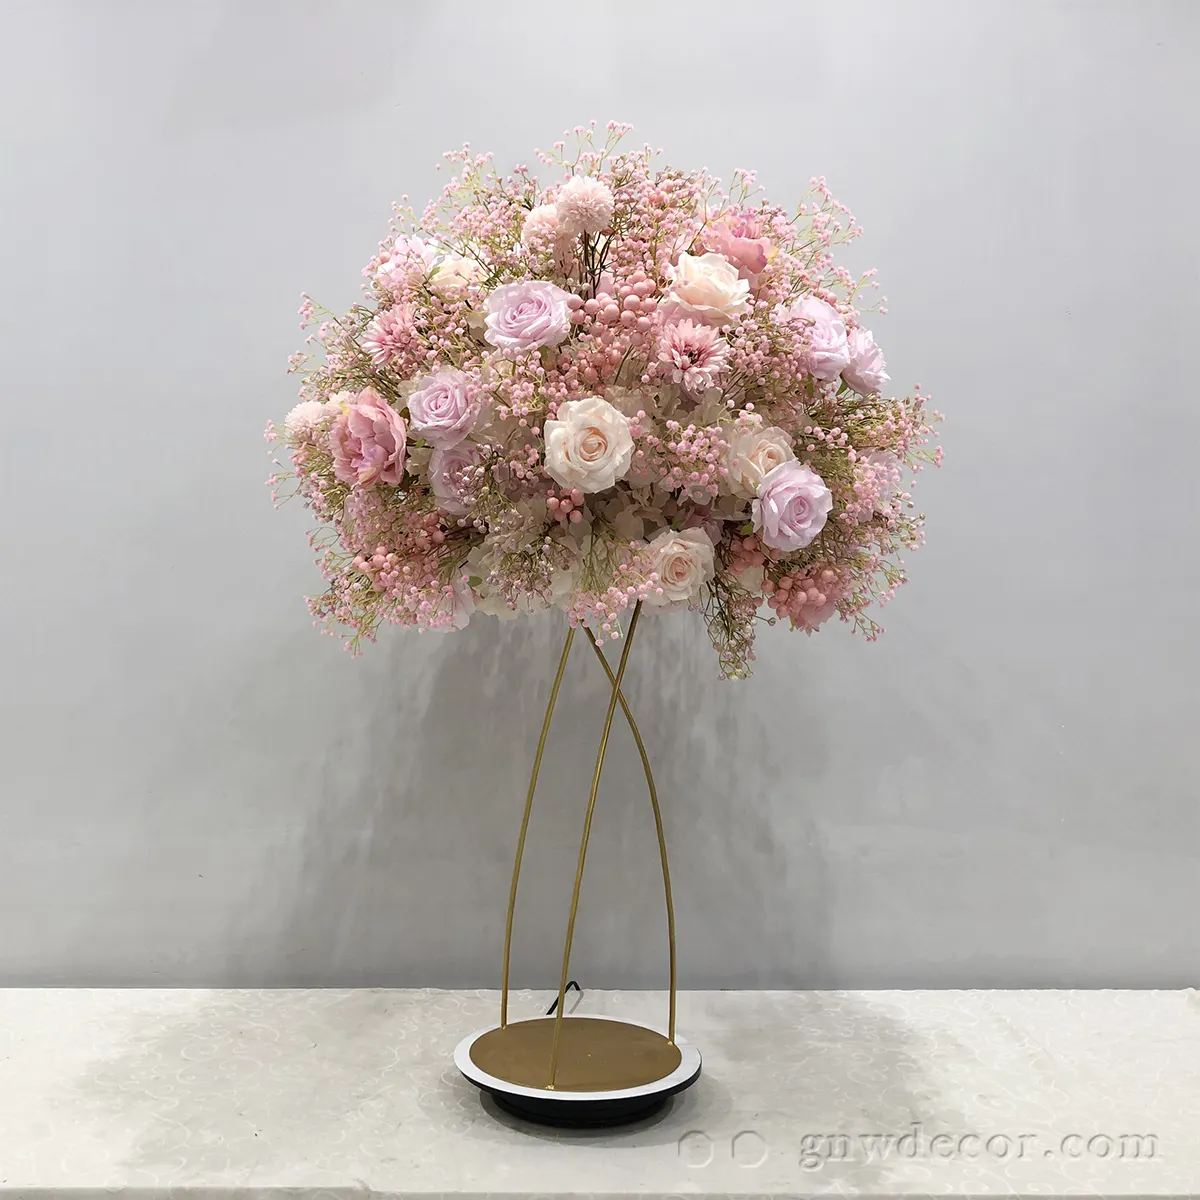 Decorações de mesa do local de gnw, arranjo de opções para mesas de flores rosa com peônia adorável